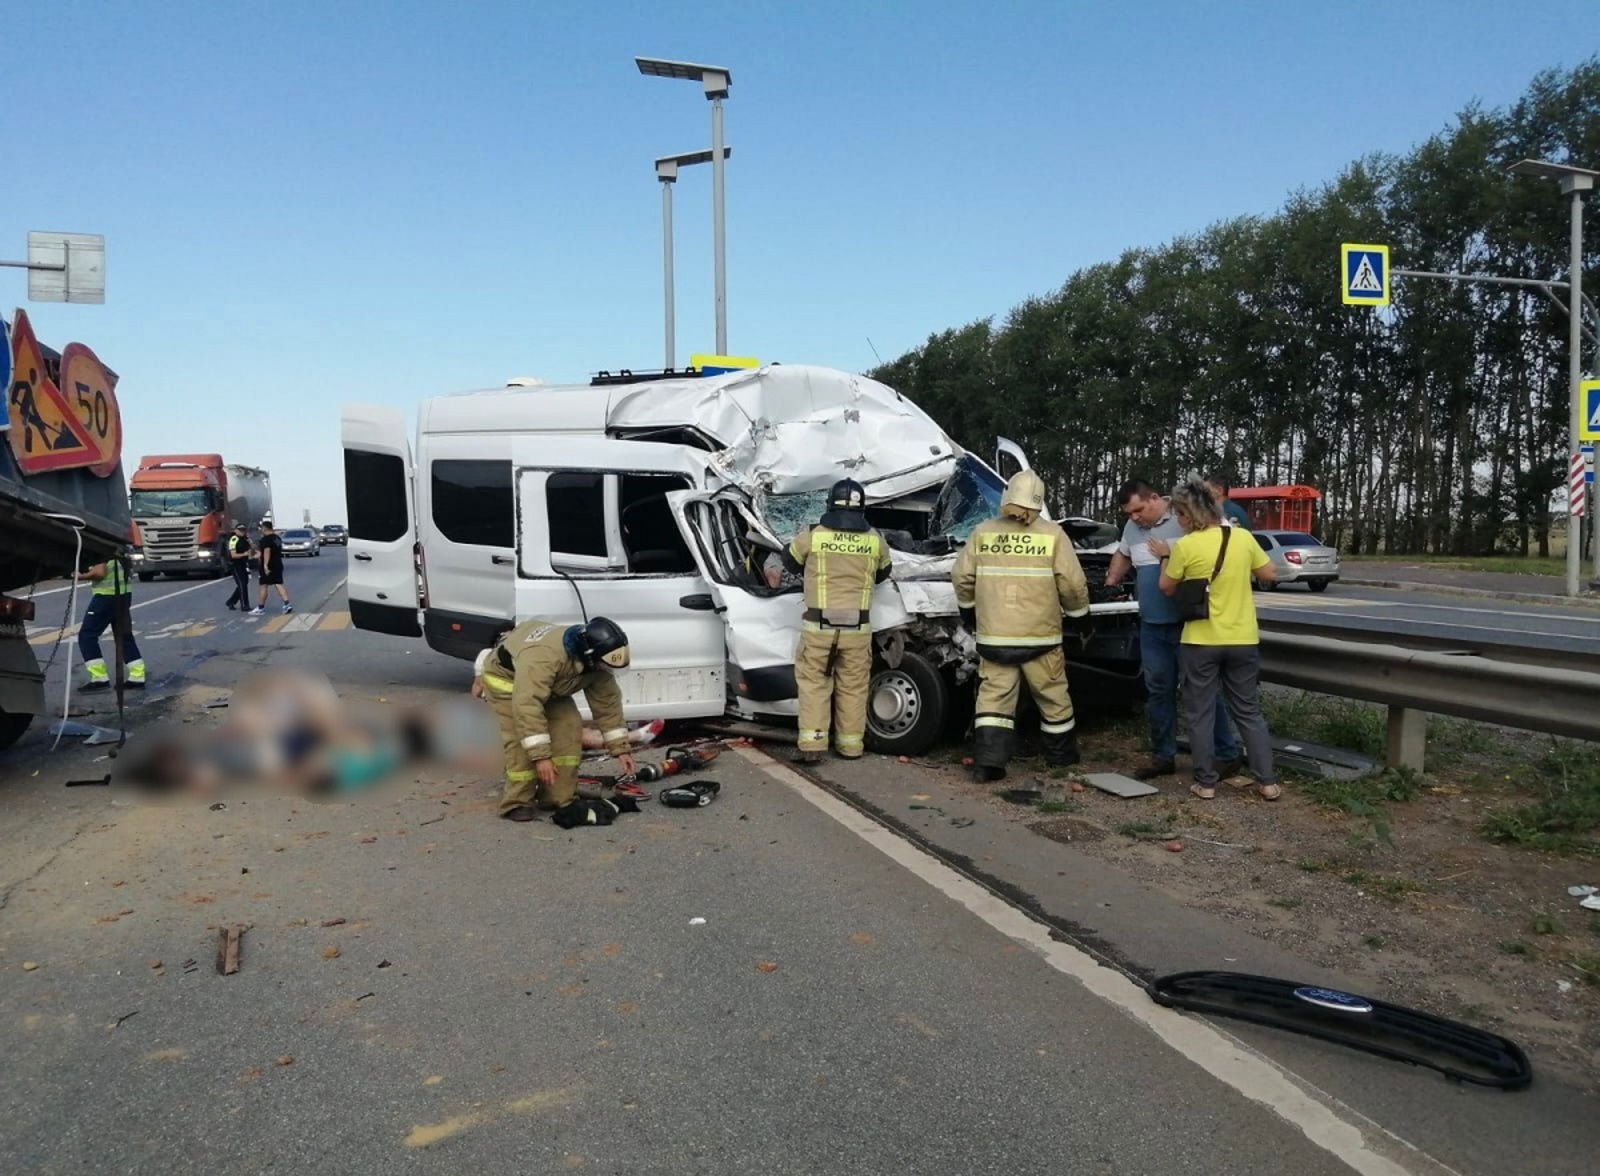 Известен список погибших пассажиров микроавтобуса на трассе М-5 в Башкирии